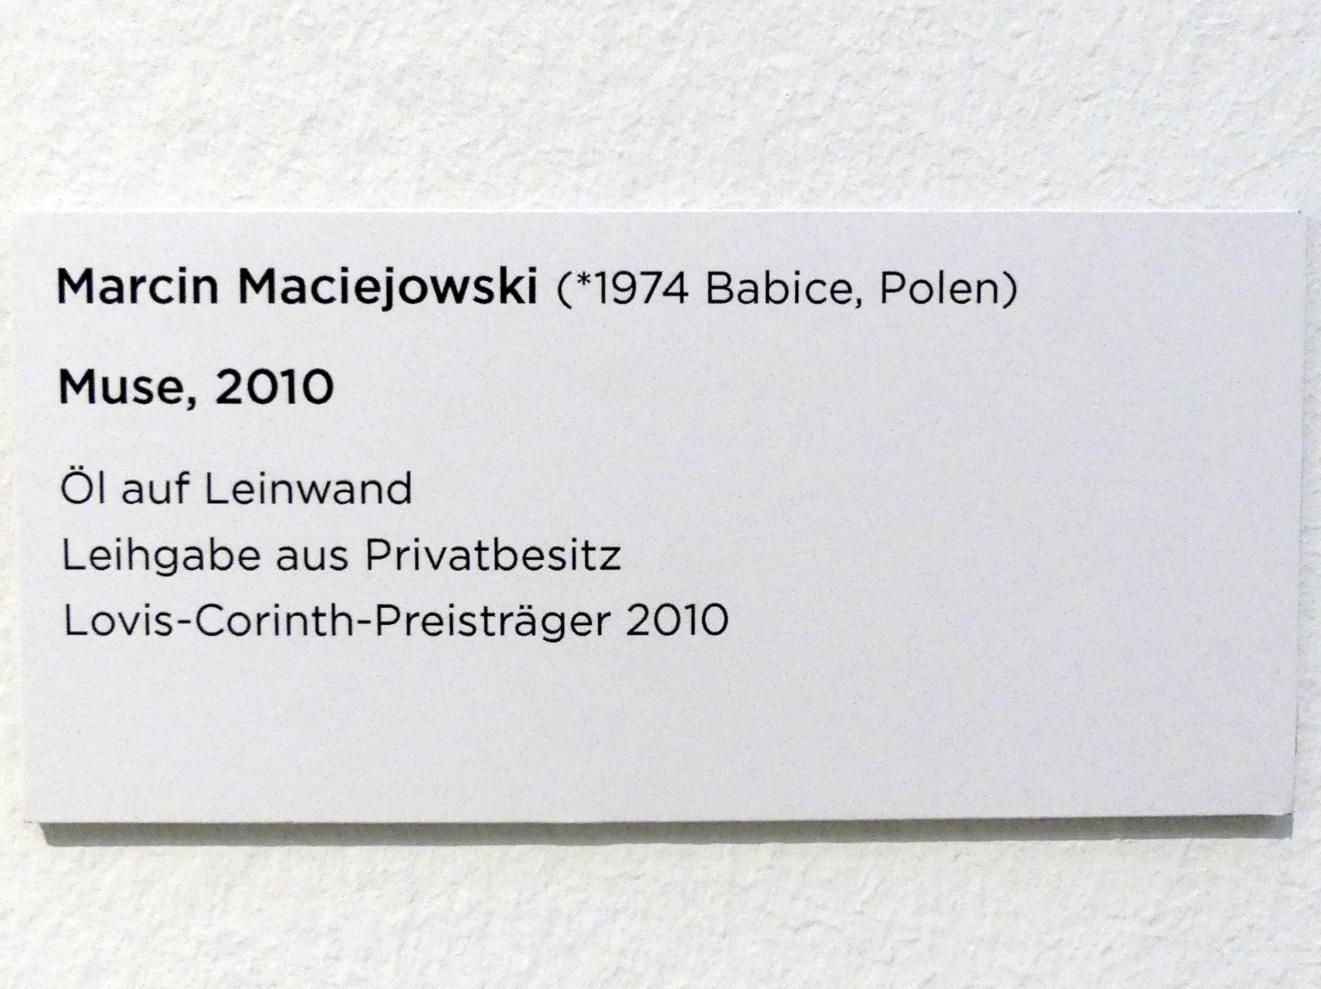 Marcin Maciejowski (2010), Muse, Regensburg, Ostdeutsche Galerie, Rotunde, 2010, Bild 2/2